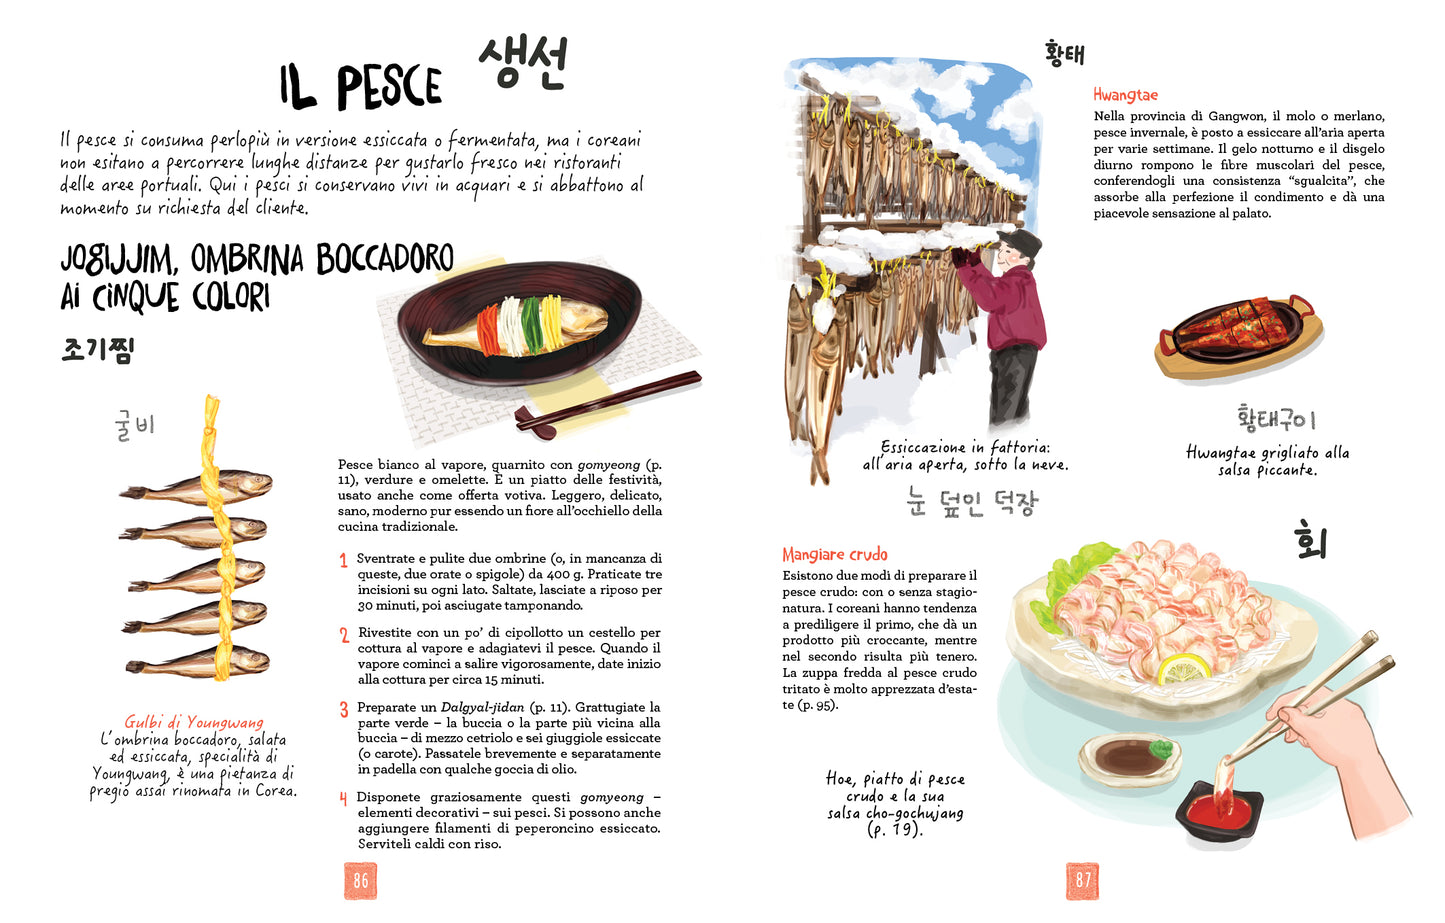 La cucina coreana illustrata::Le ricette e le curiosità per conoscere una grande cultura gastronomica